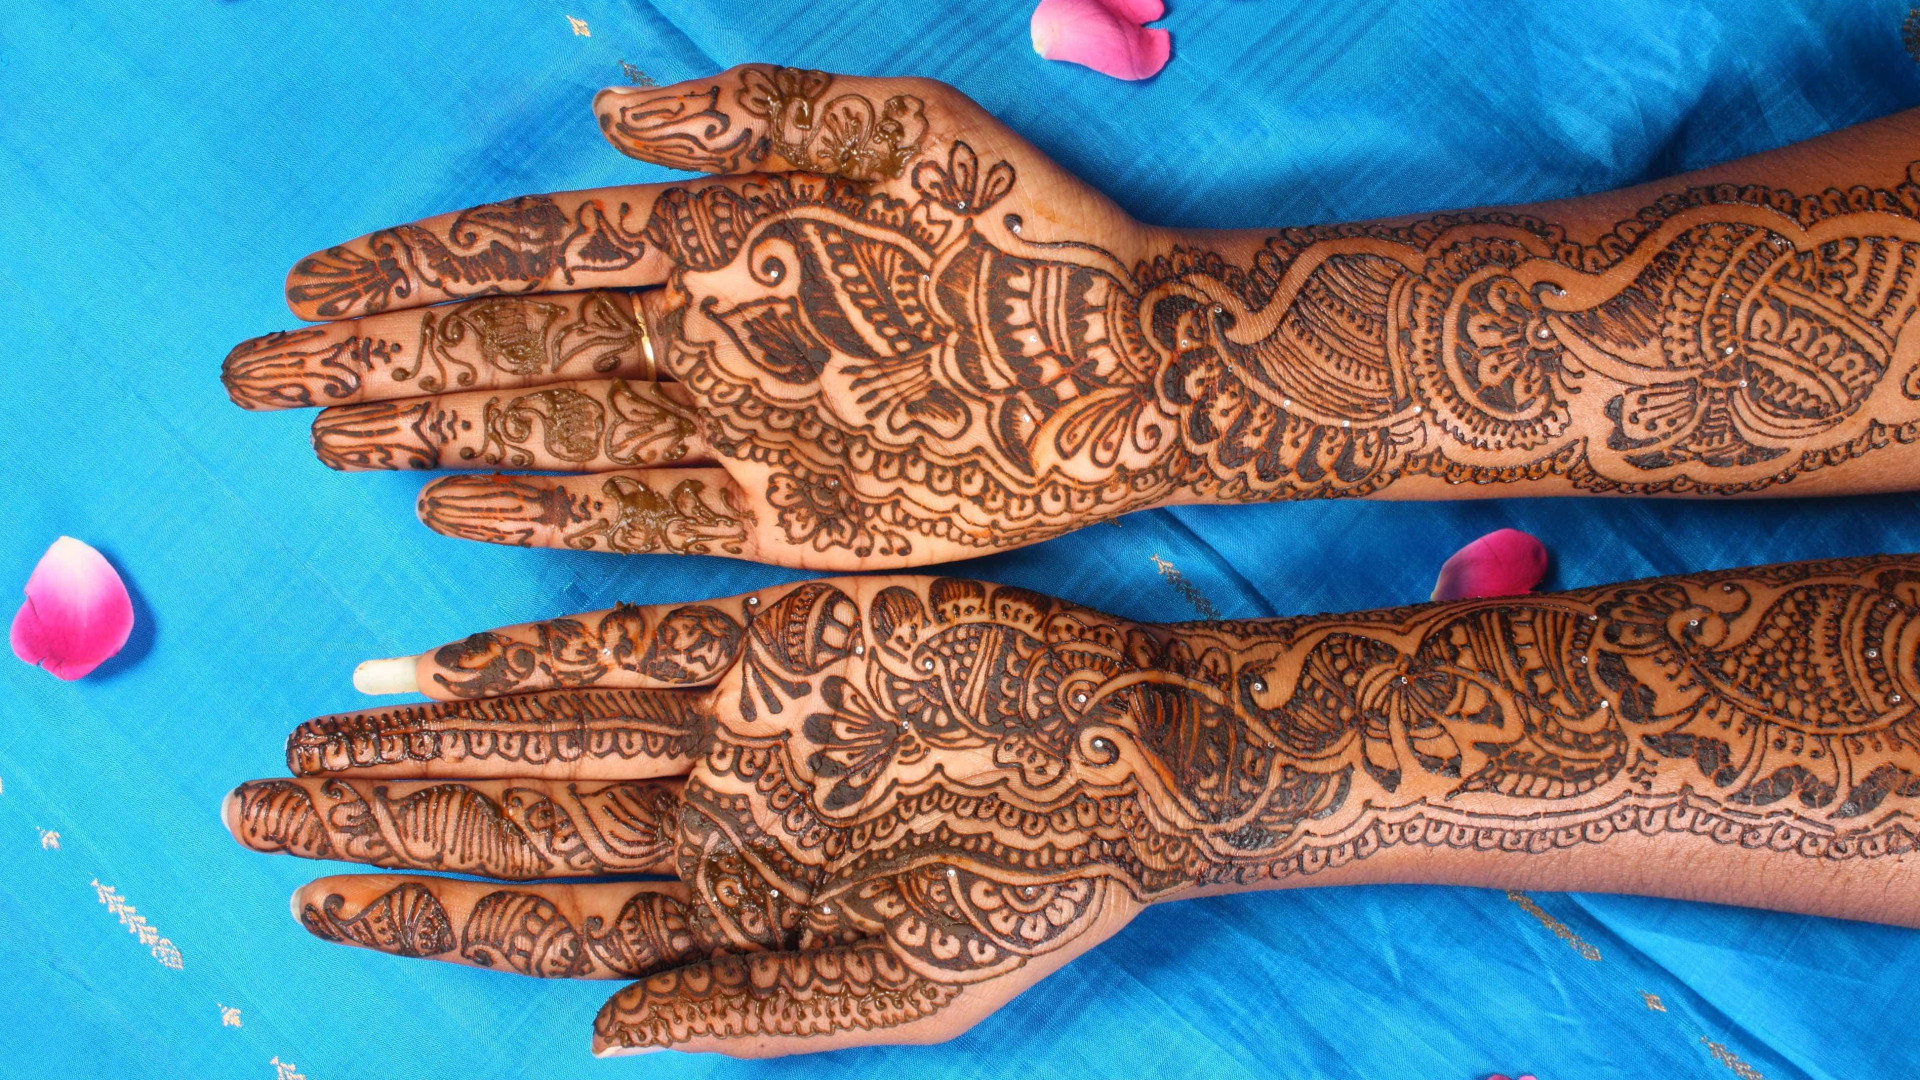 Tatuagem de henna pode causar alergia 
quando não é usado material puro